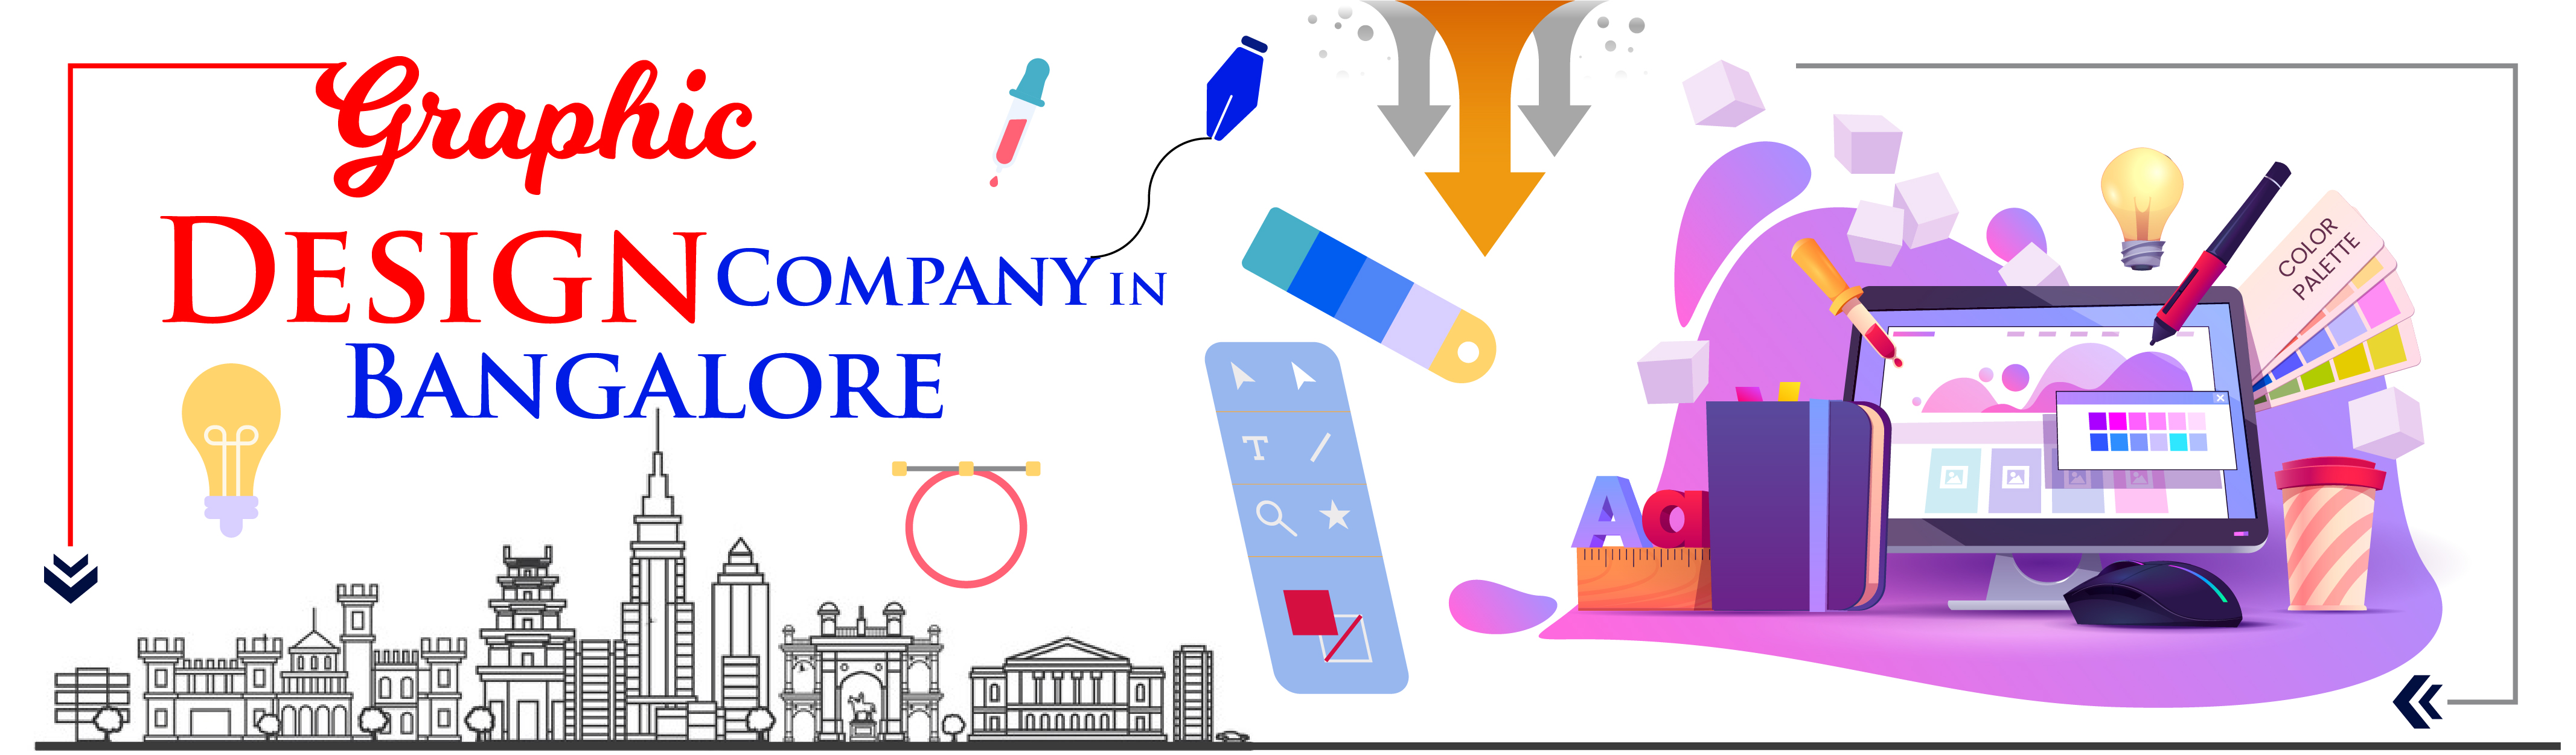 GRAPHIC DESIGN COMPANY Company in Bangalore